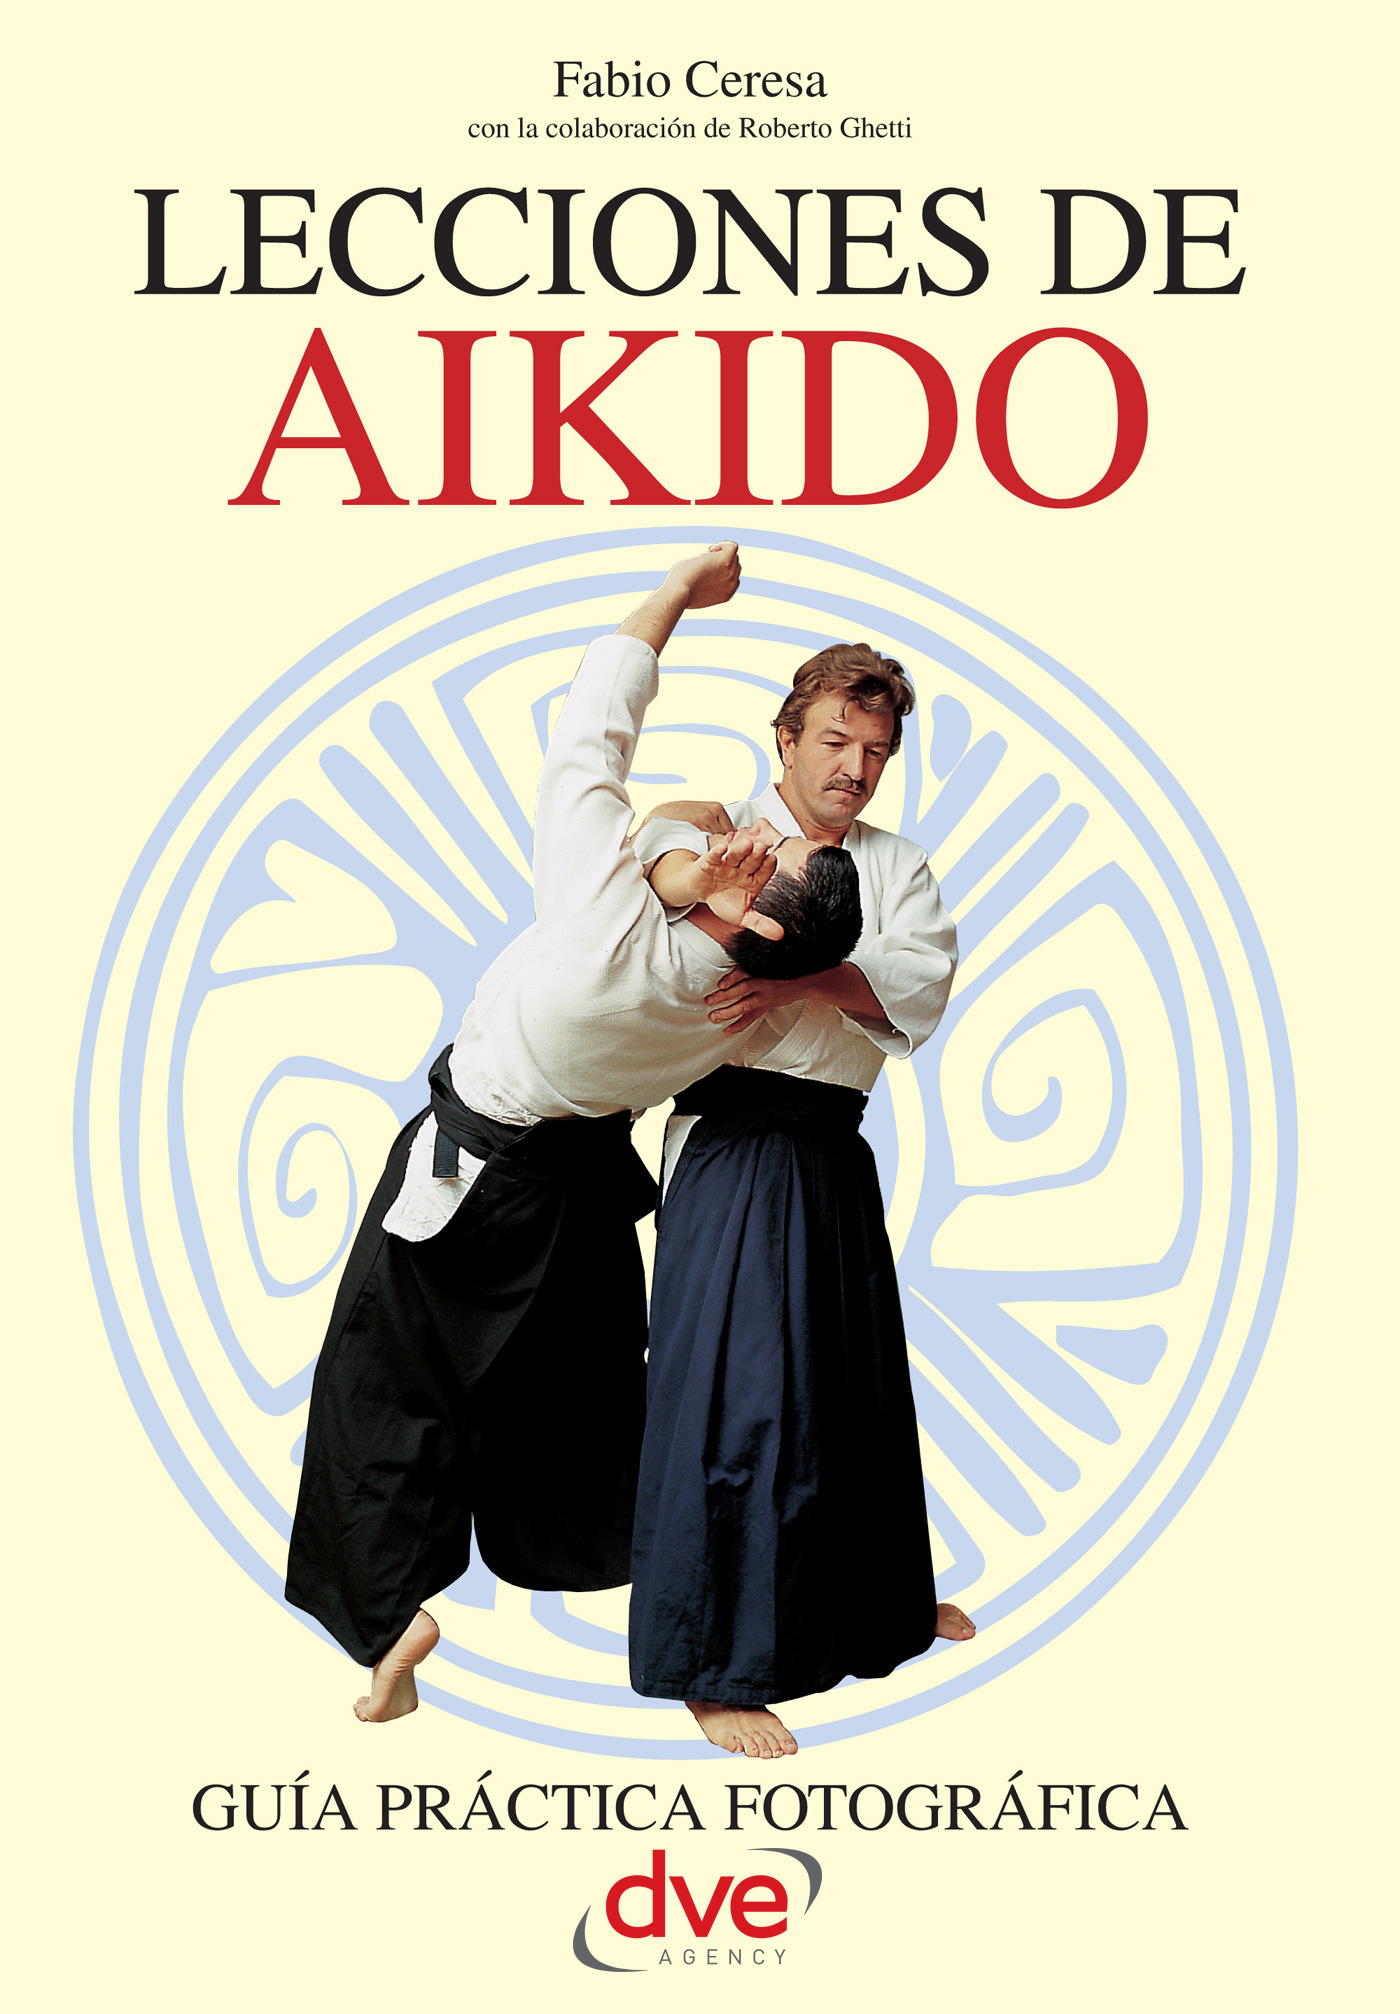 Ceresa, Fabio - Lecciones de Aikido, ebook